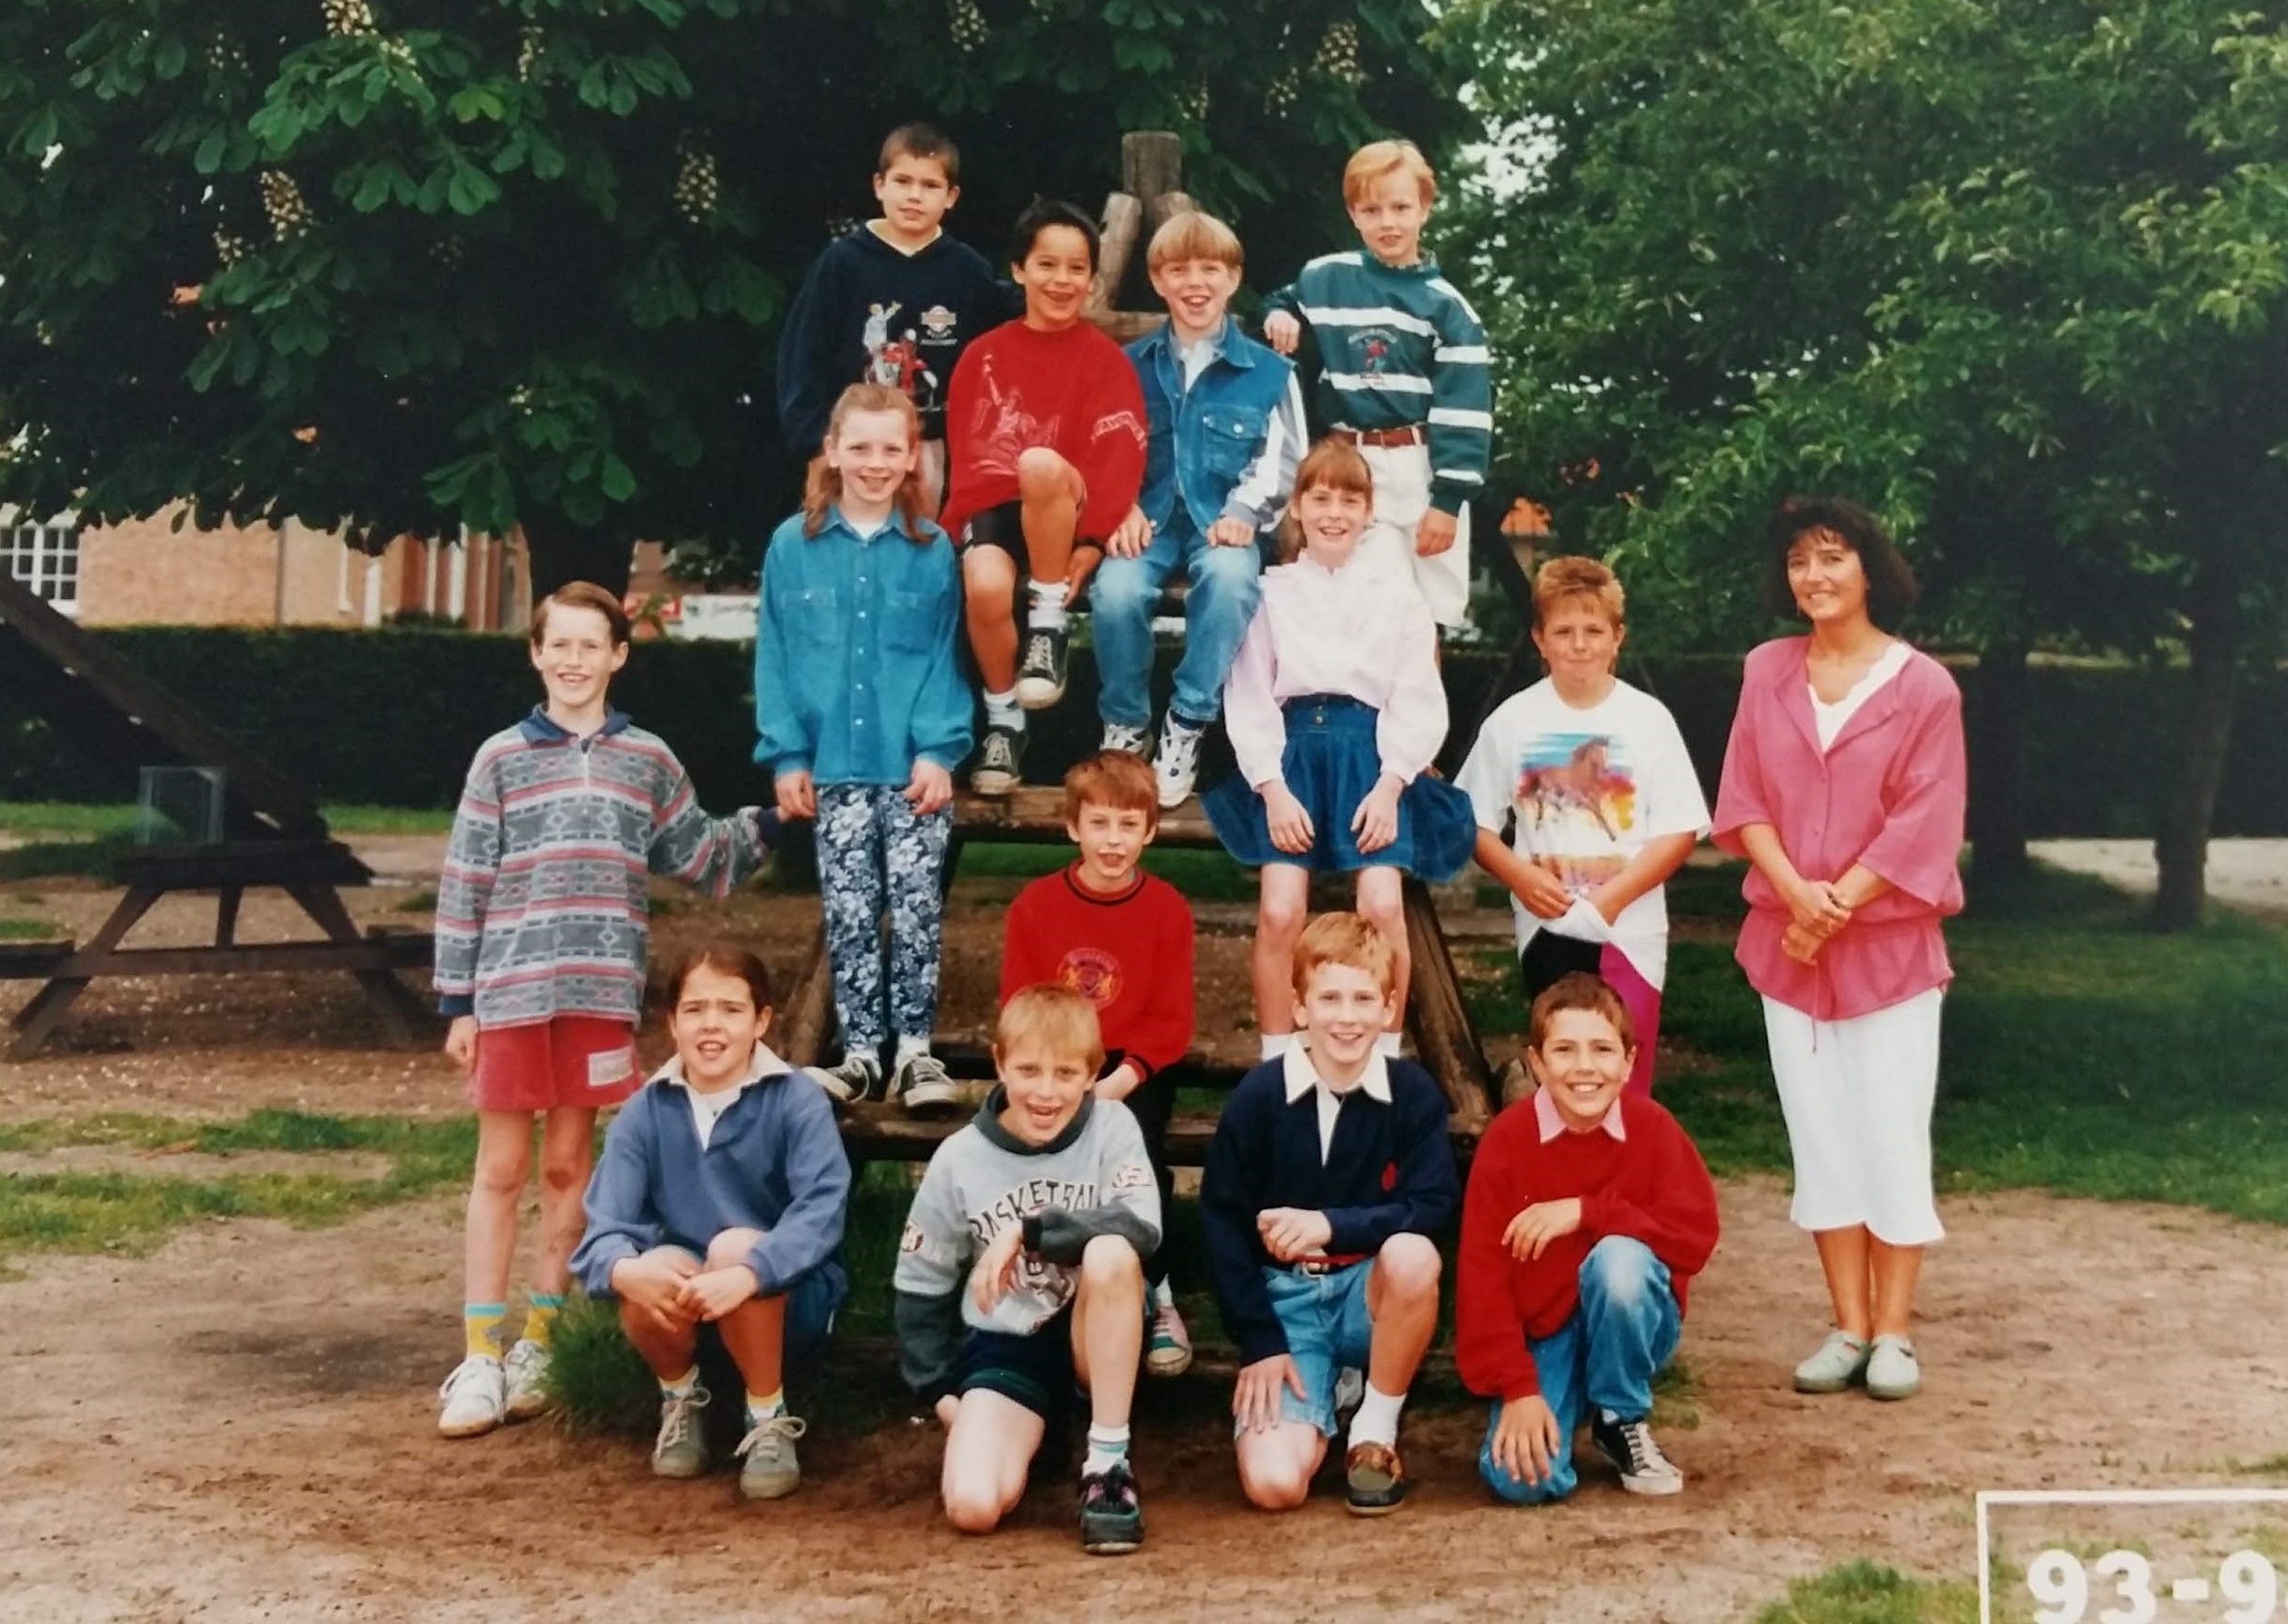 1993-1994 klasfoto 3e leerjaar Tinne De Houwer, Pierenbos Gemeenteschool Halle-Velden 2.jpg